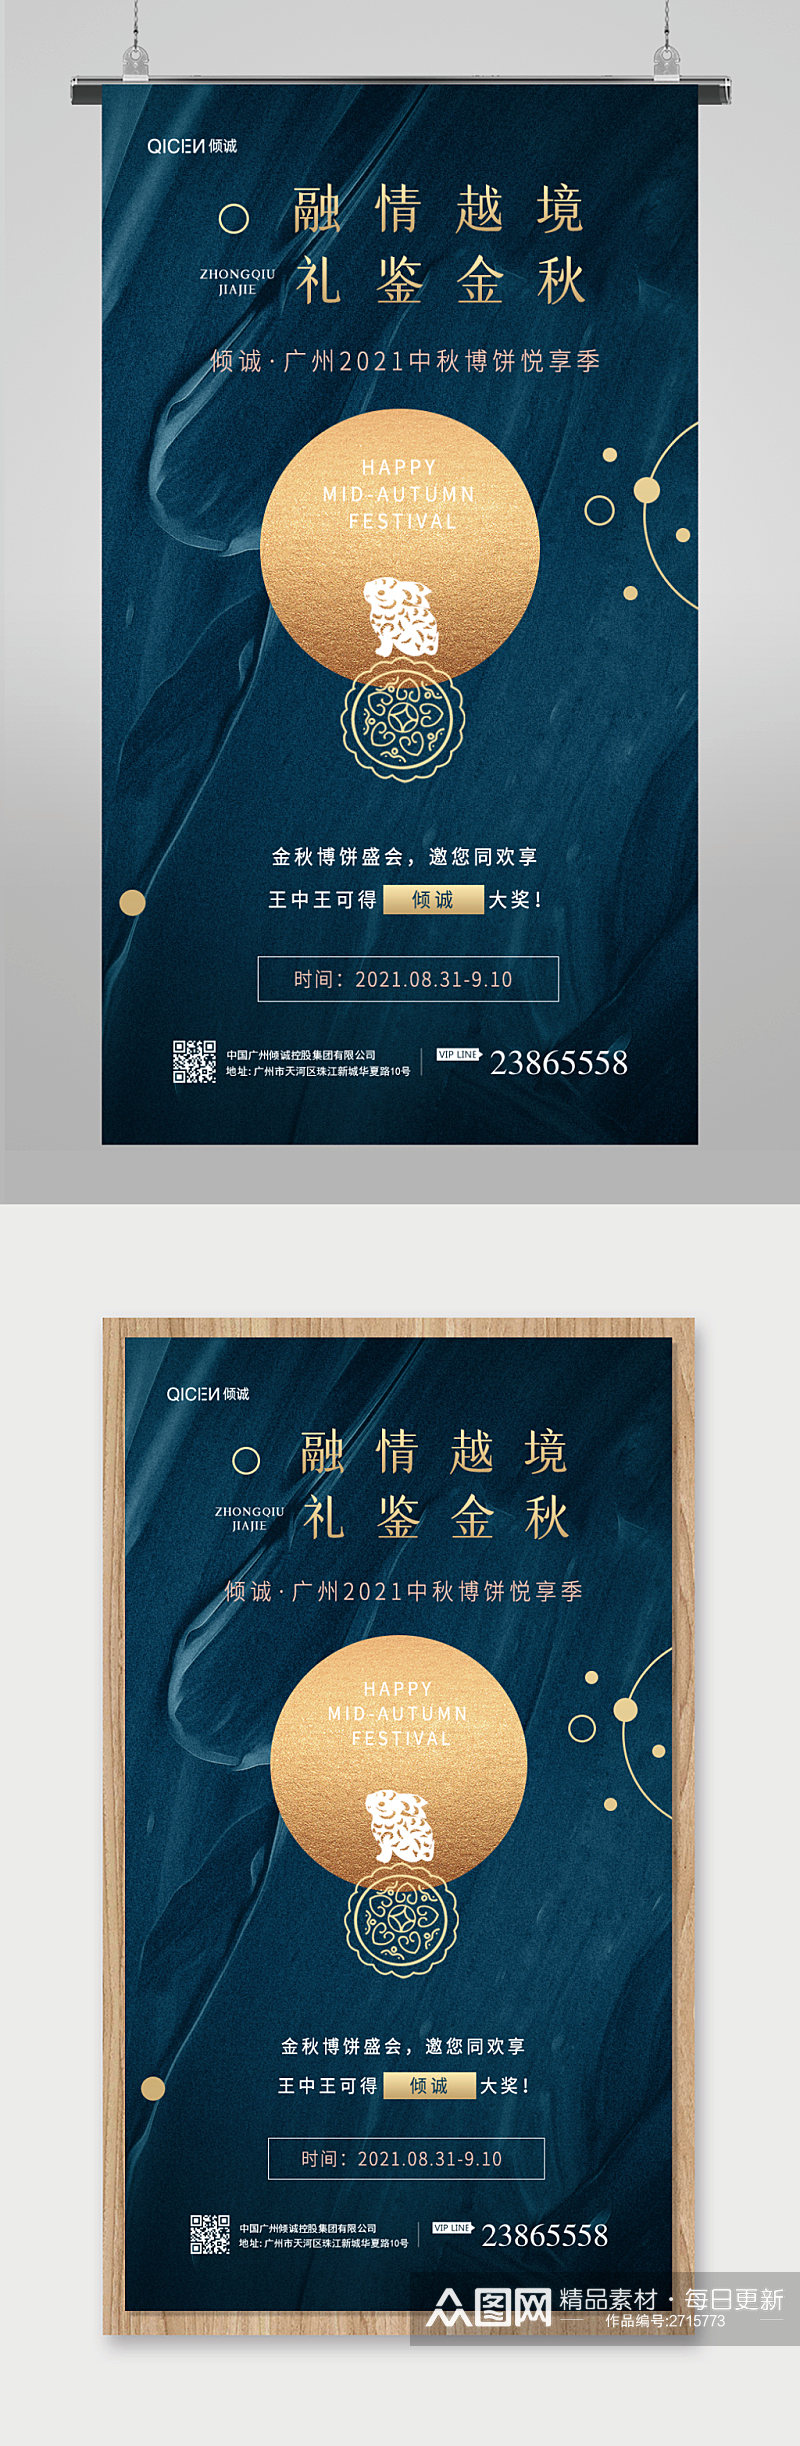 简约高级中国传统节日中秋地产邀请函海报素材